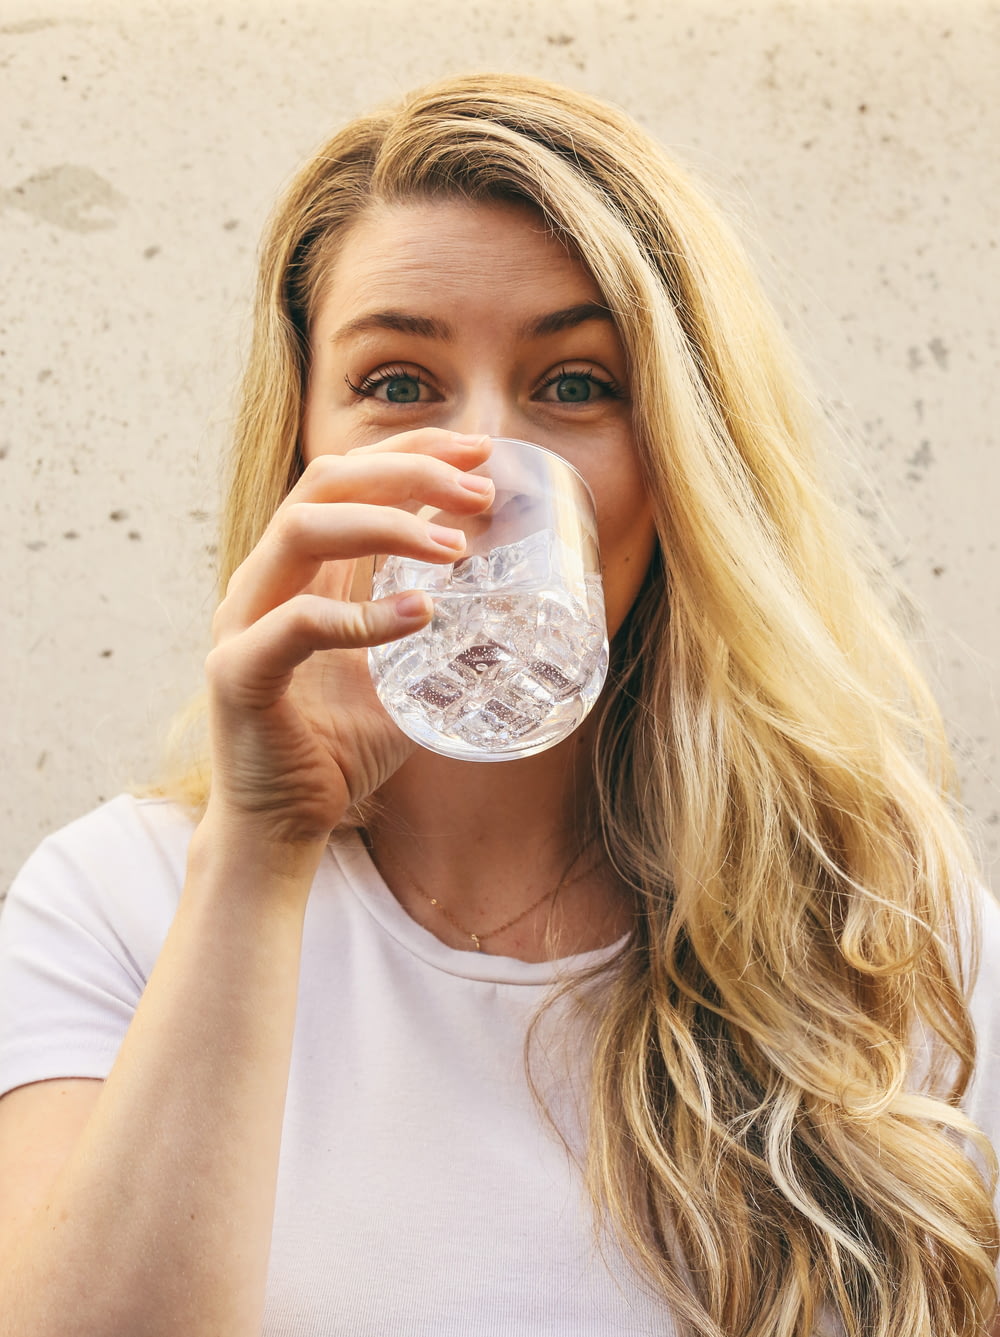 白いクルーネックシャツの女性が水を飲む